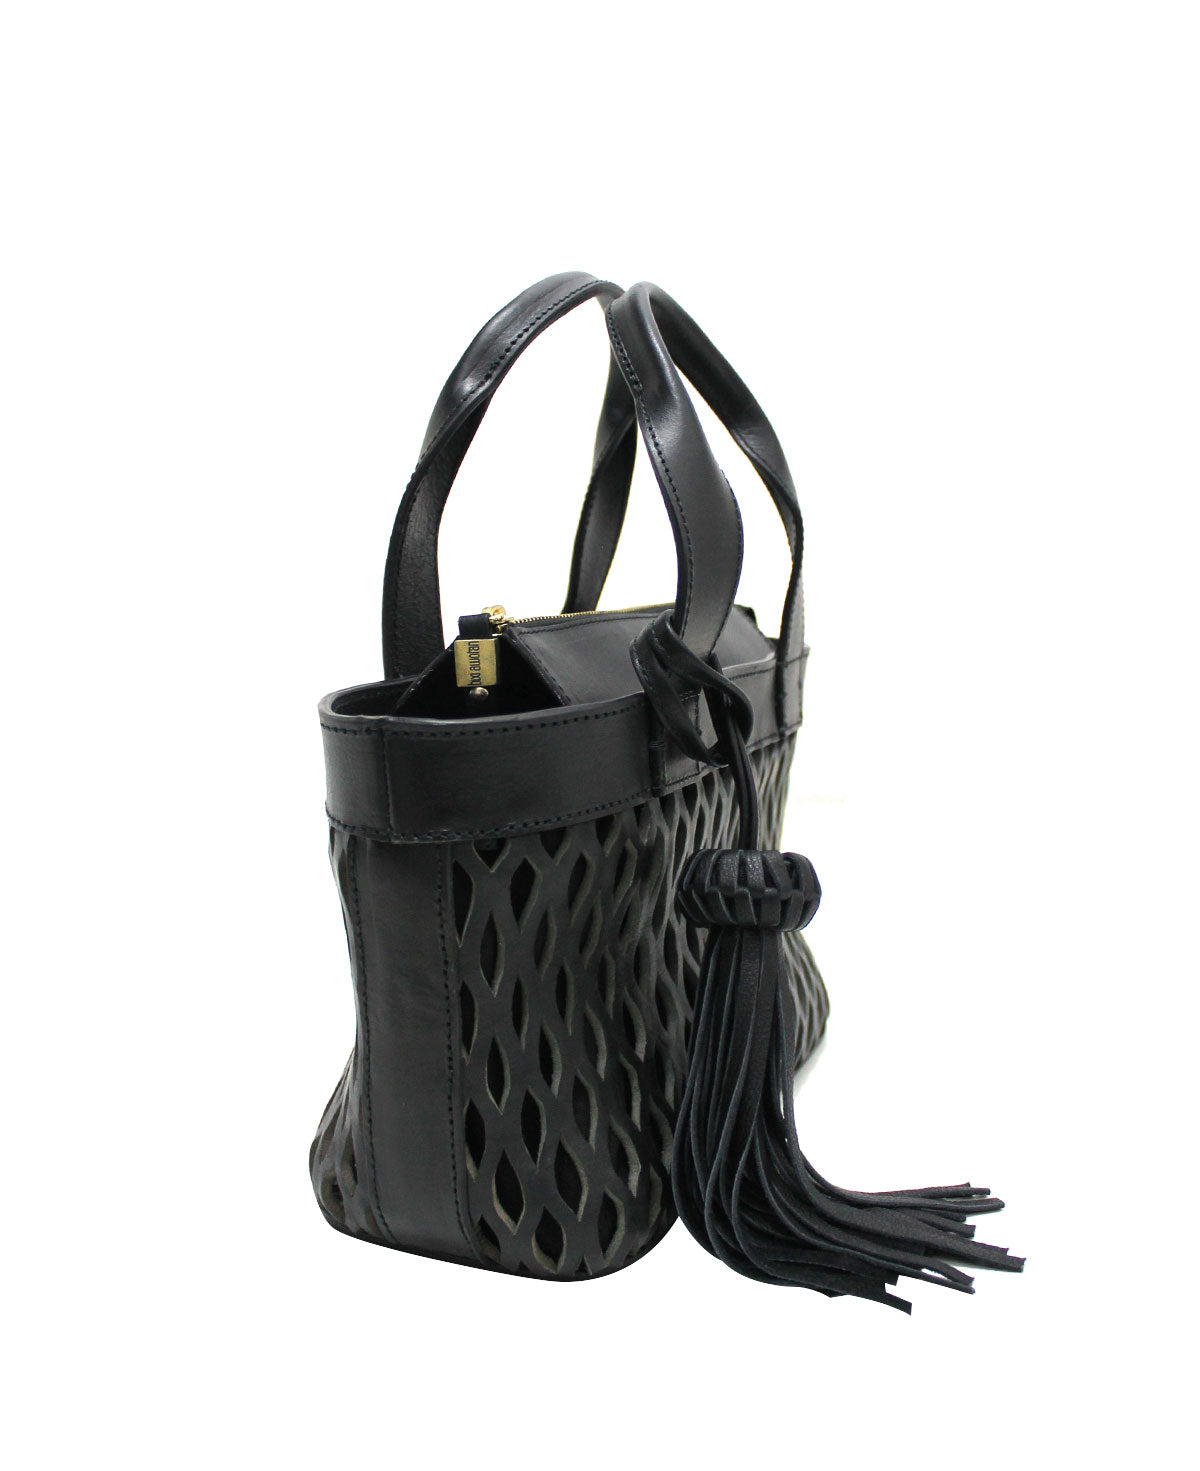 Mini Tulum Black Leather Handbag